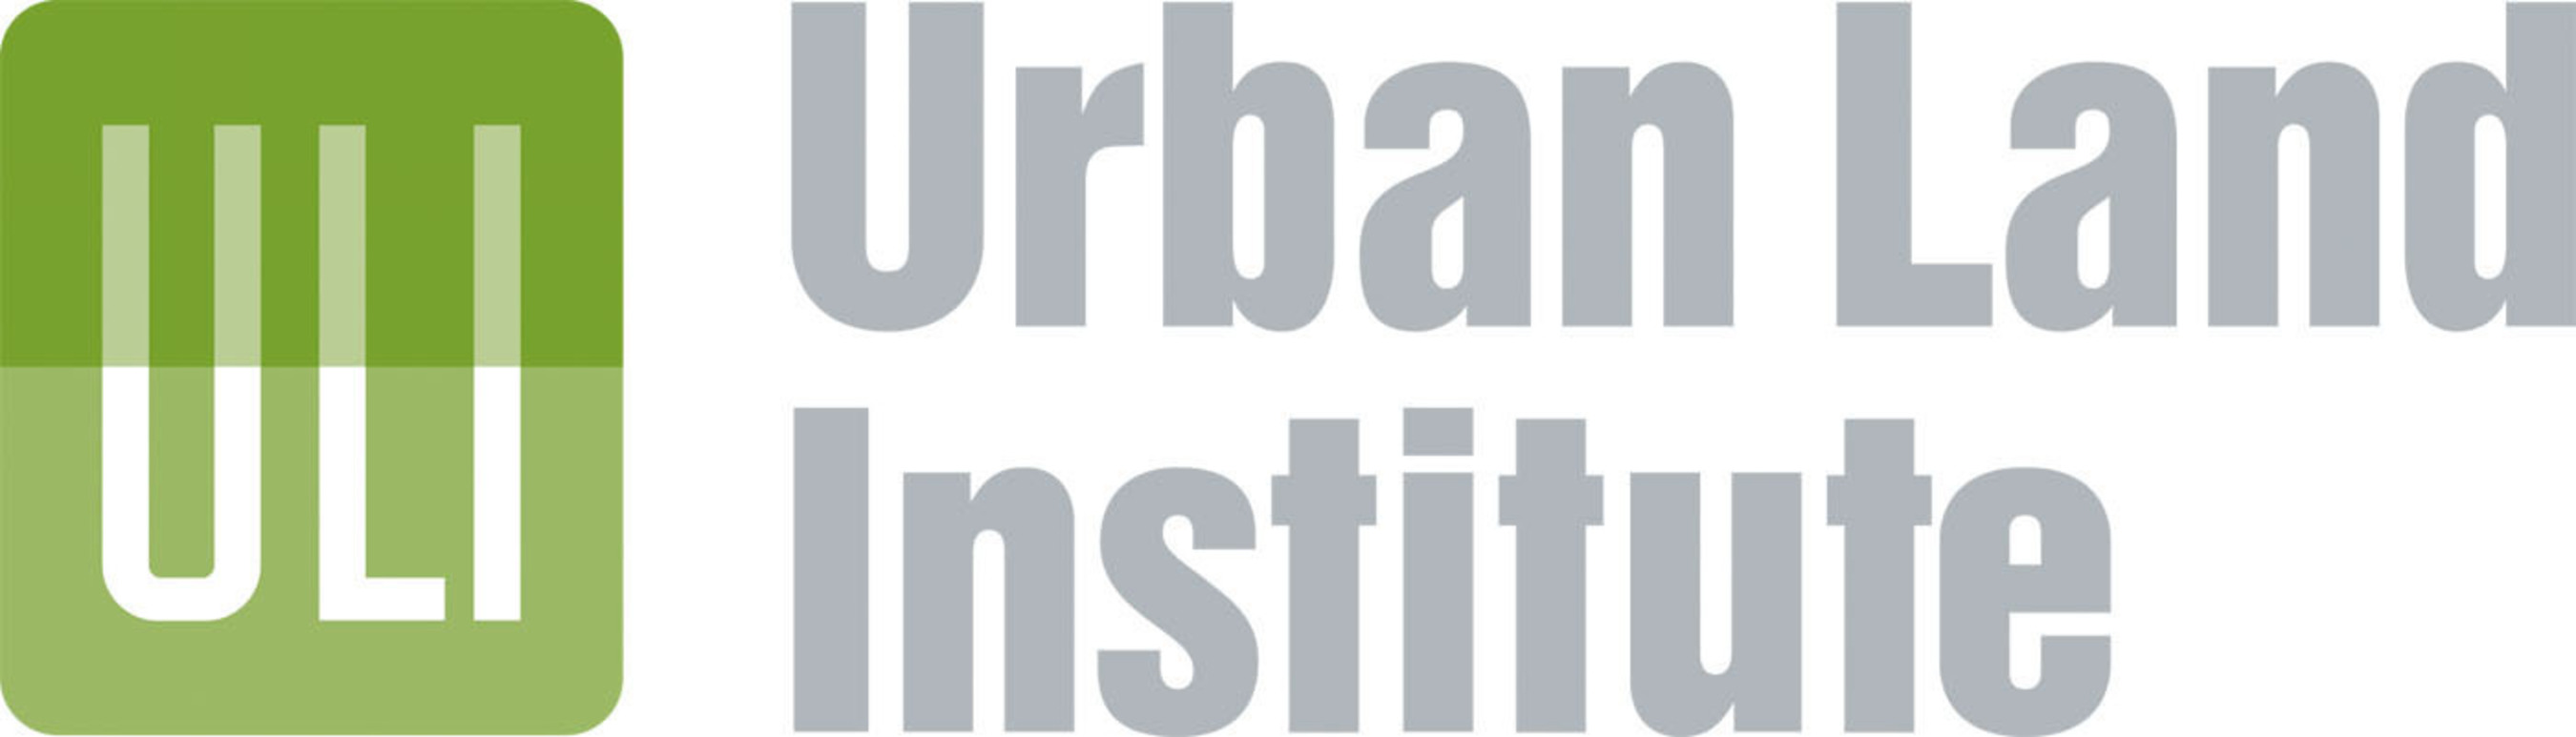 Urban Land Institute Logo.